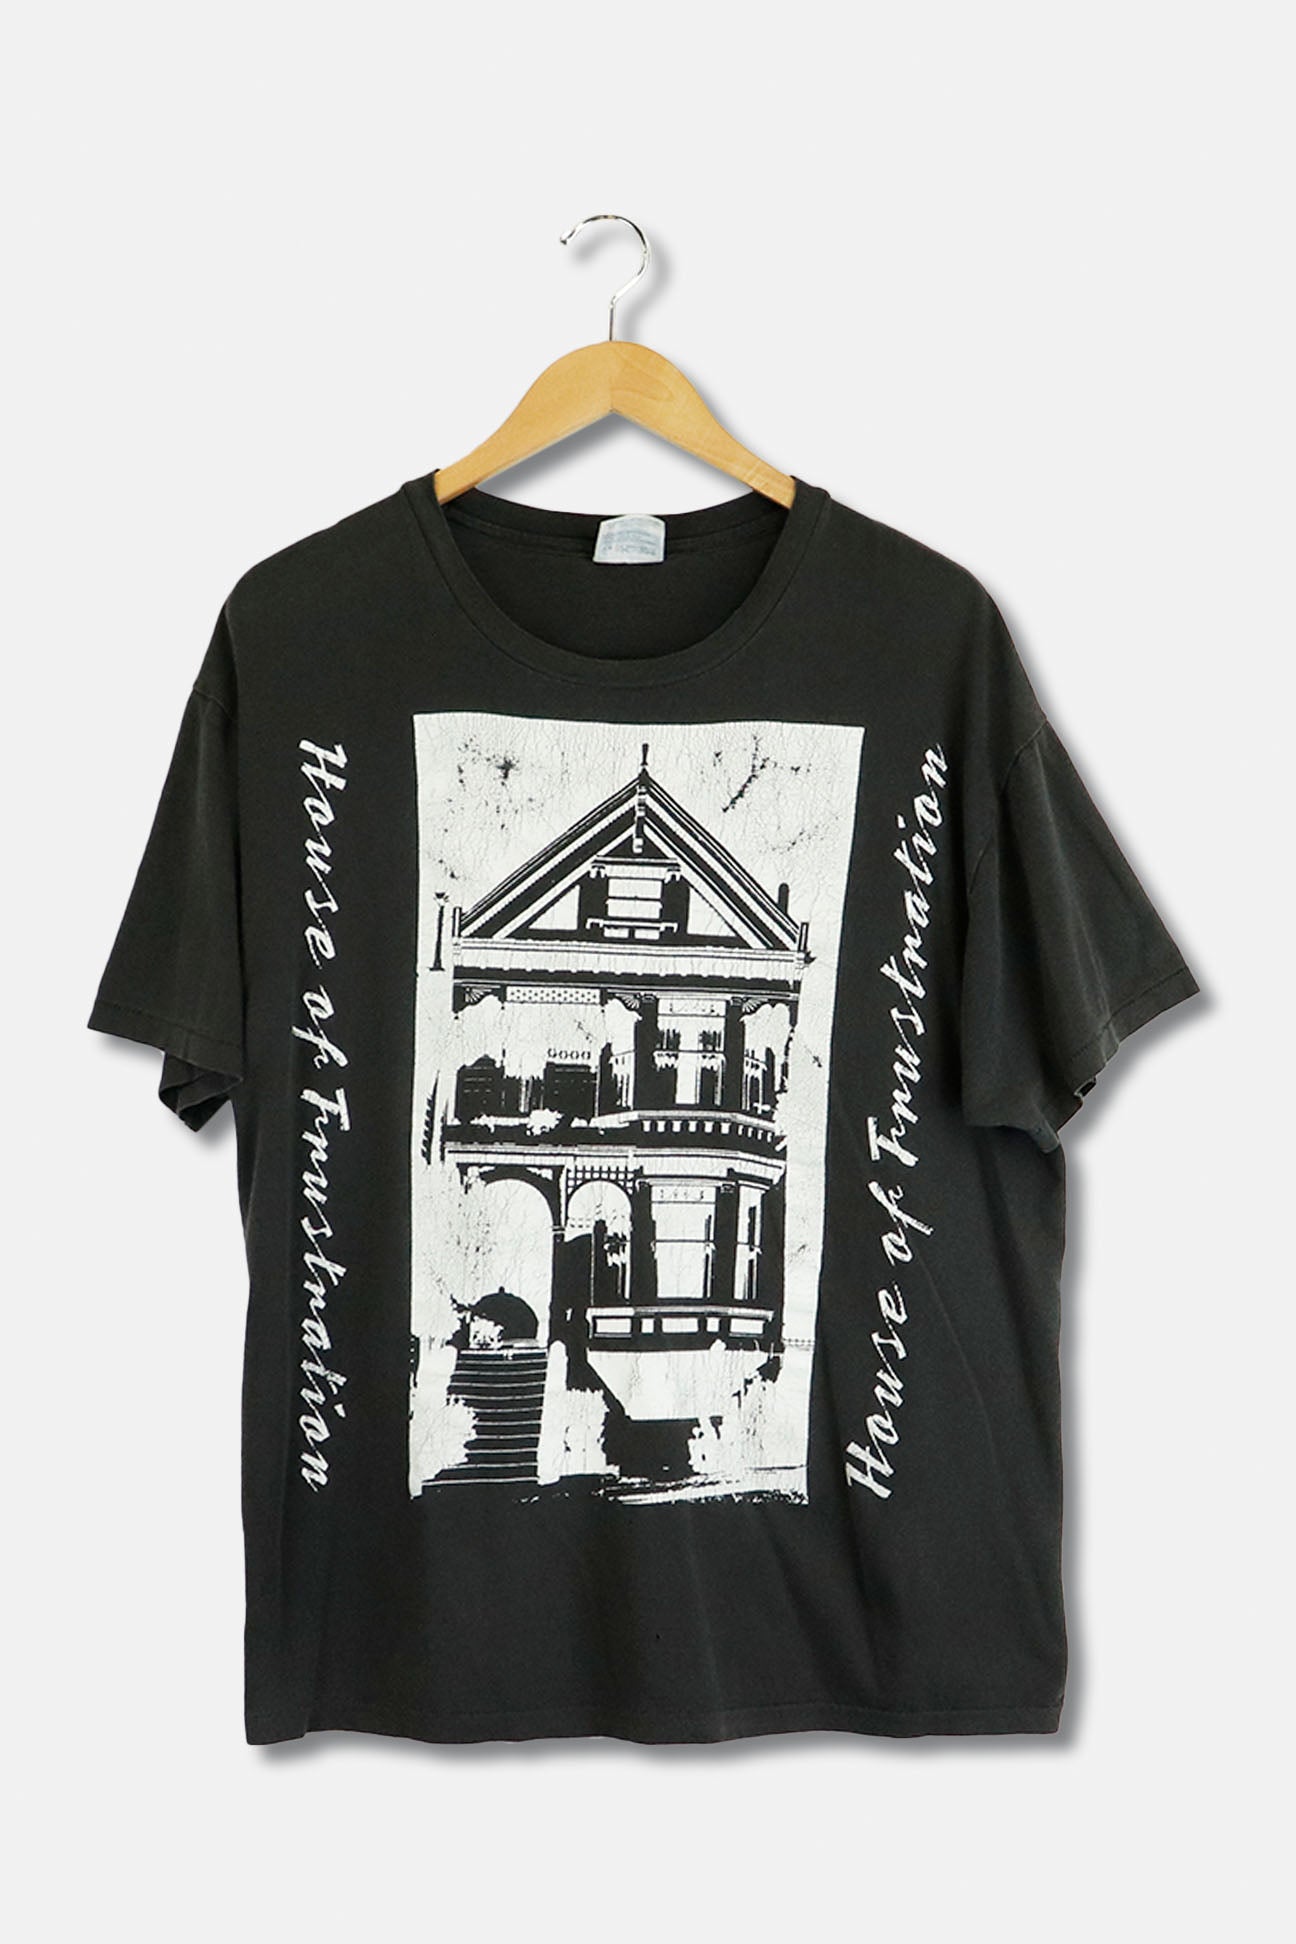 ワンピース専門店 House Tshirts / White (BK) XXL 村上隆 | www ...